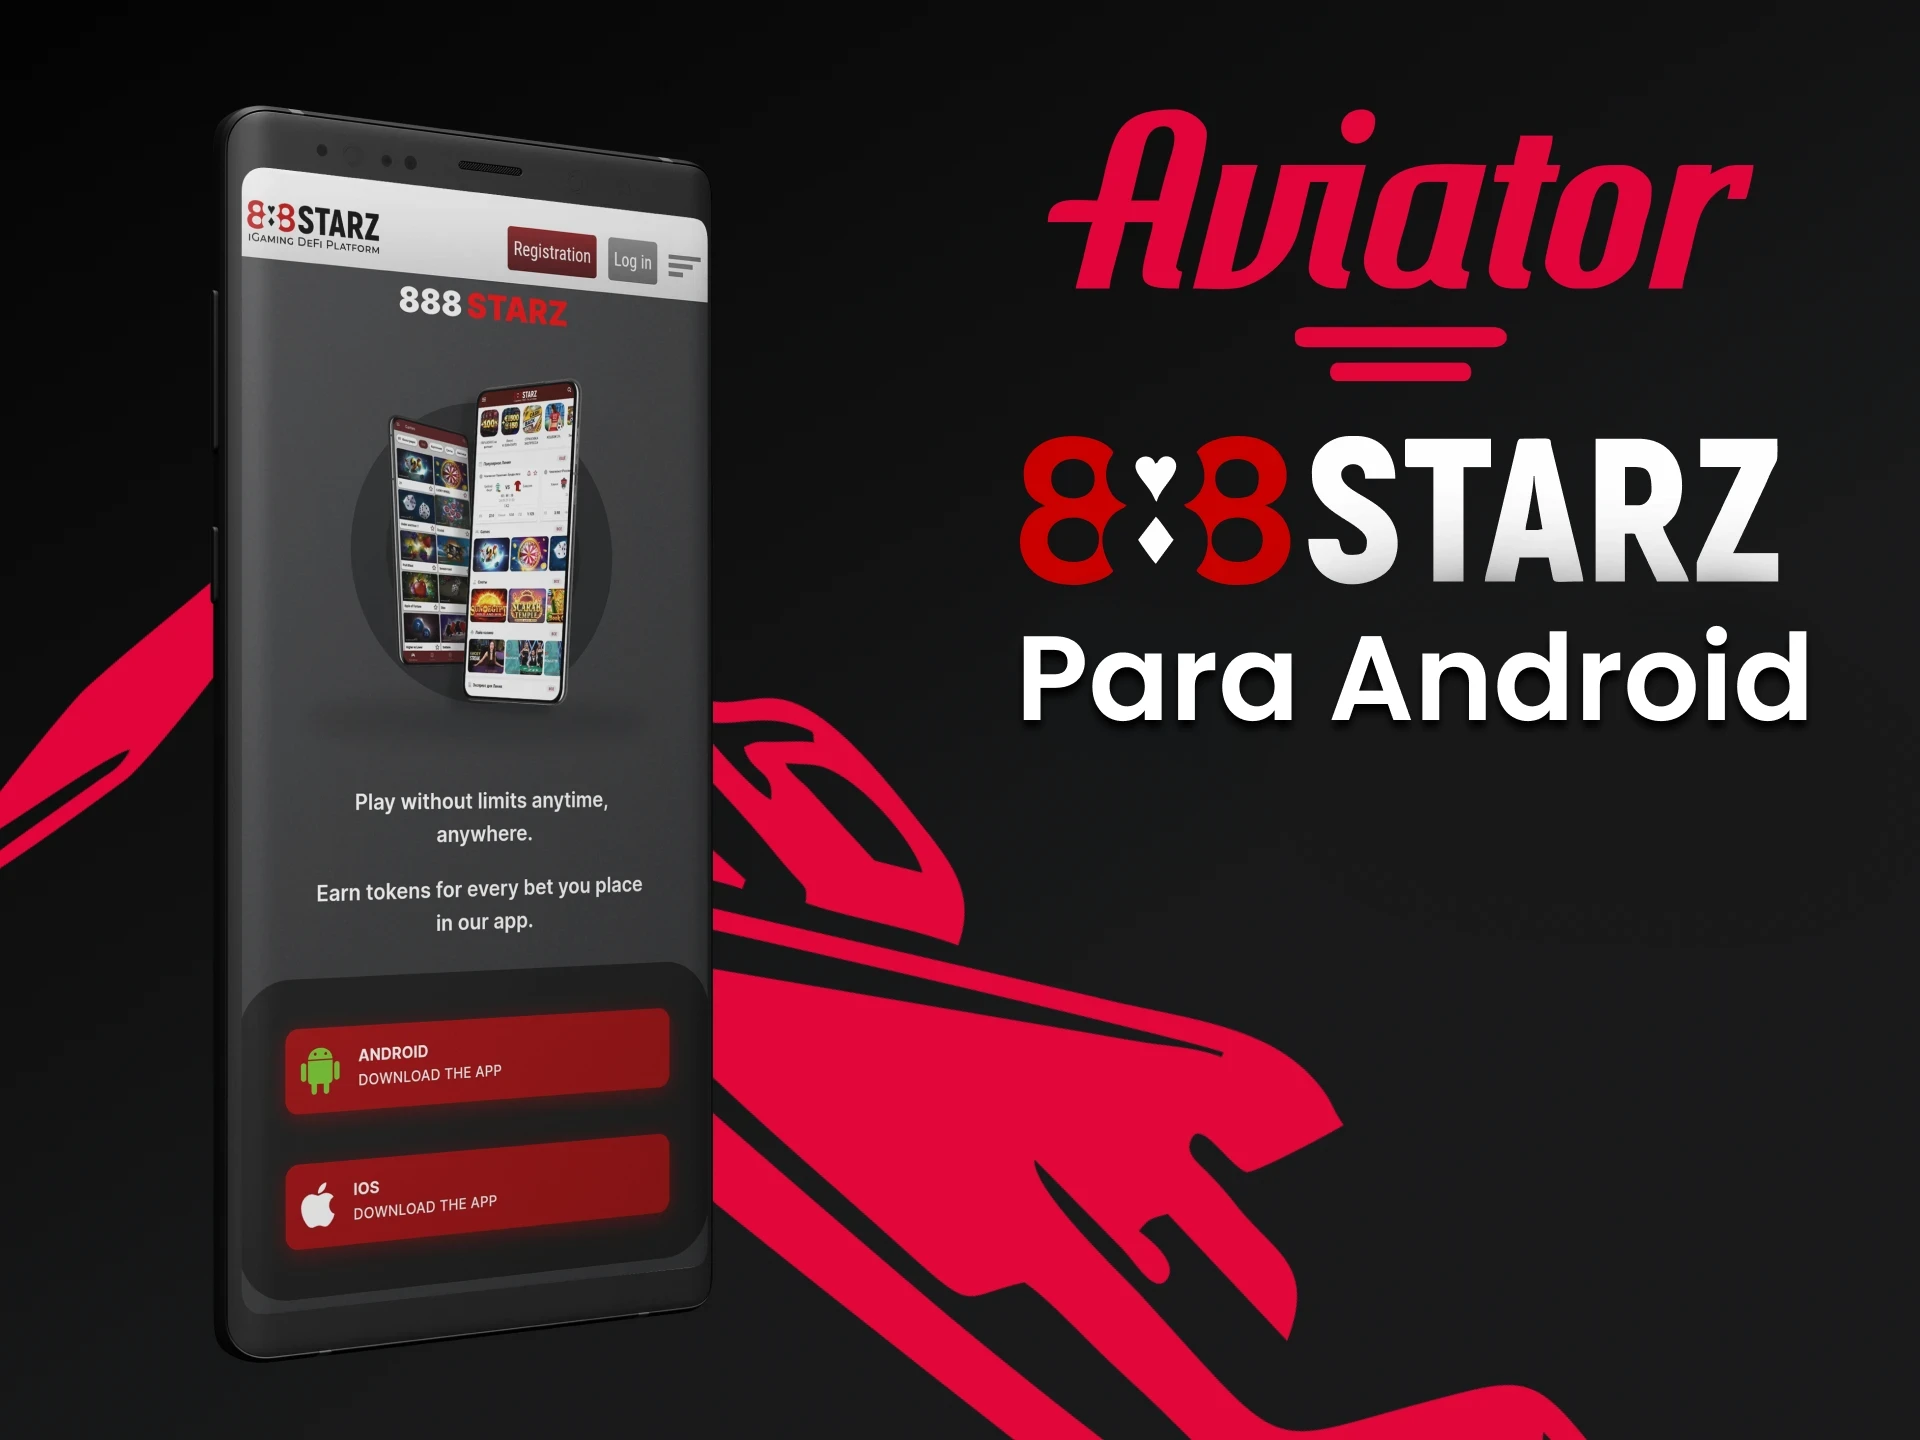 Faça o download do aplicativo 888starz para Android para jogar Aviator.